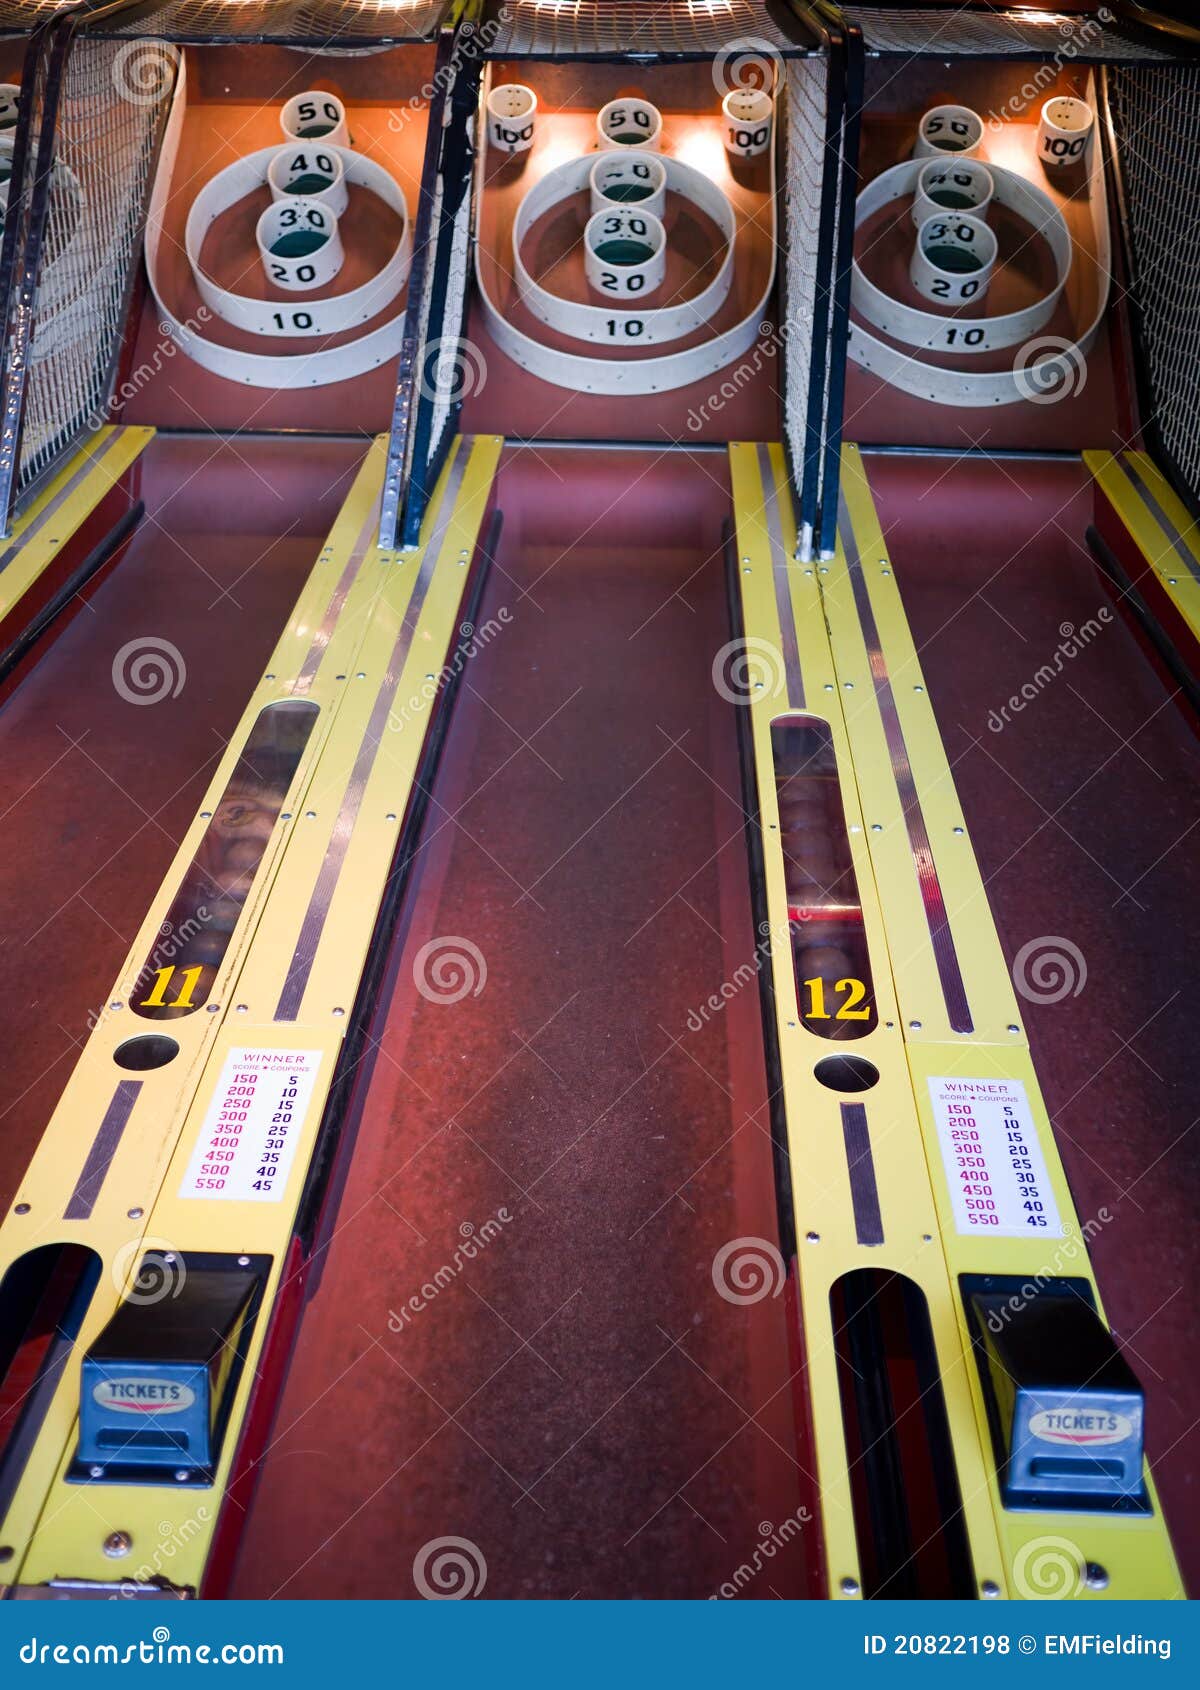 Skee Ball. Midway carnival Skeeball bowling amusement game at an arcade.